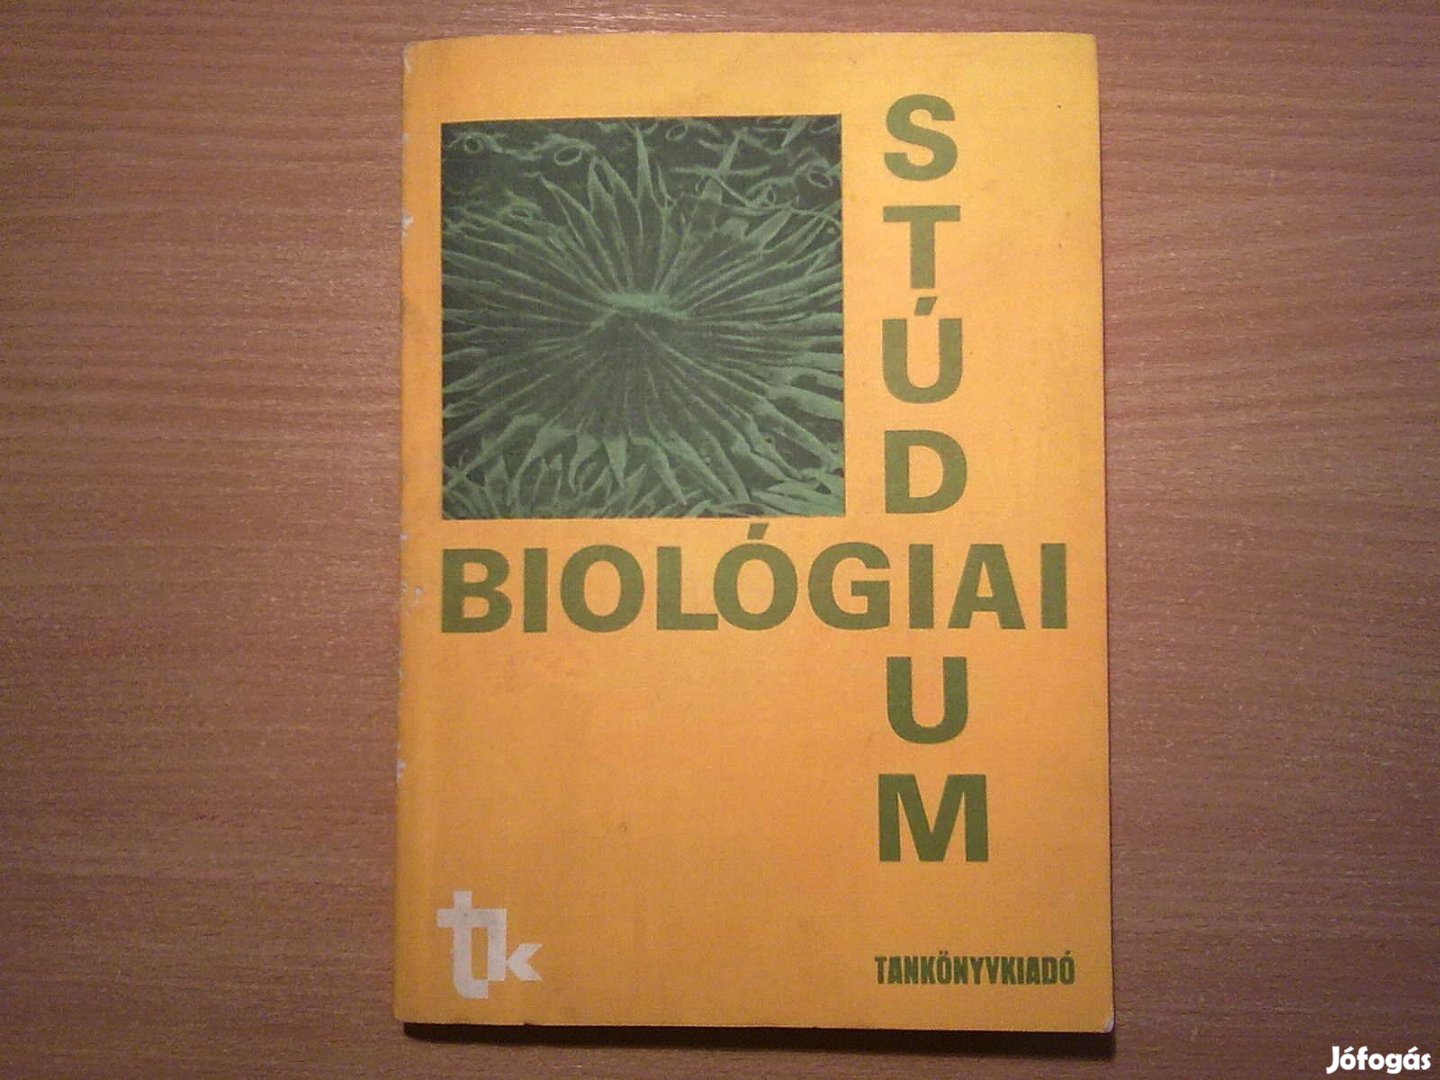 Biológiai stúdium - A felsőfokú tanulmányokra előkészítő tanfolyamo